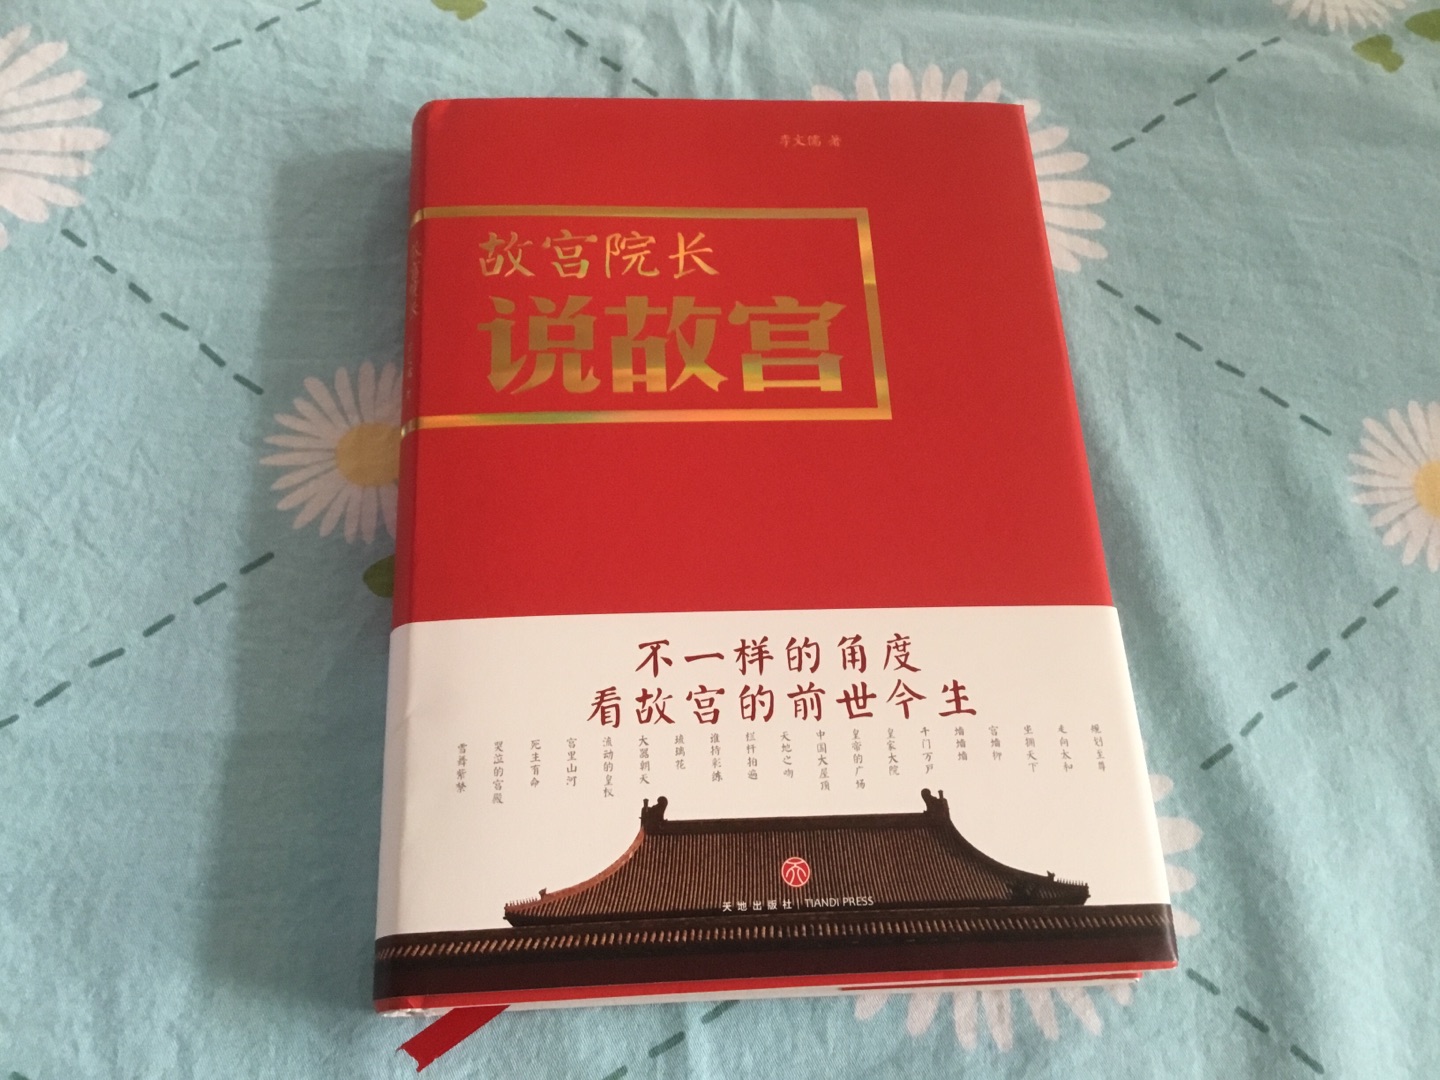 早想买这本书的 今天终于收到了。这里面需要后人知道中国传统文化的大内容，图文并茂的形式很好懂。